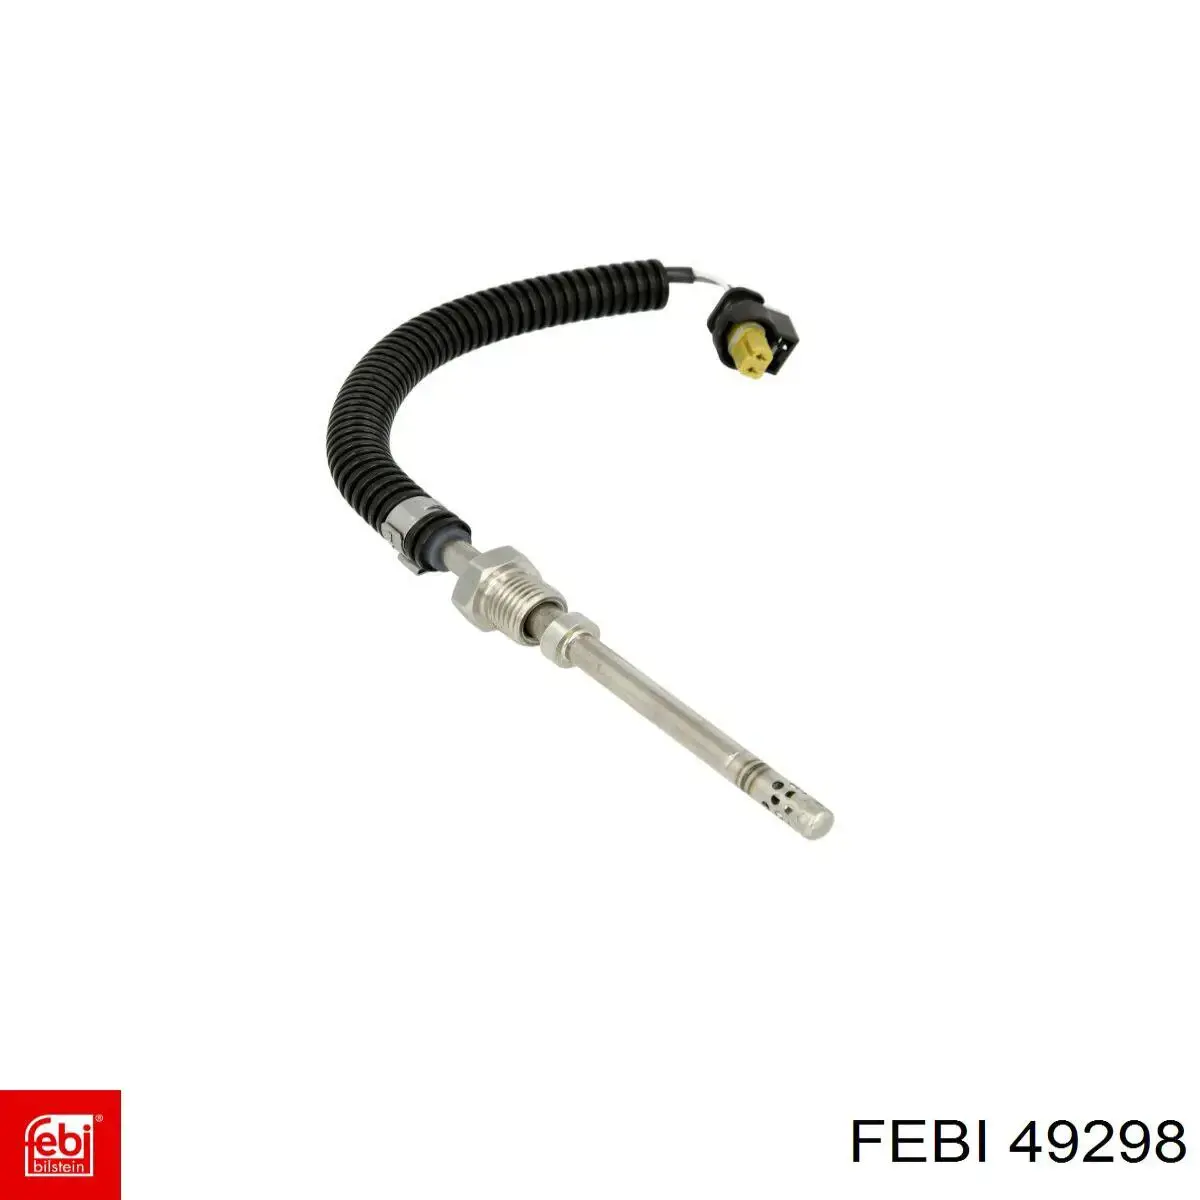 49298 Febi sensor de temperatura dos gases de escape (ge, antes de filtro de partículas diesel)